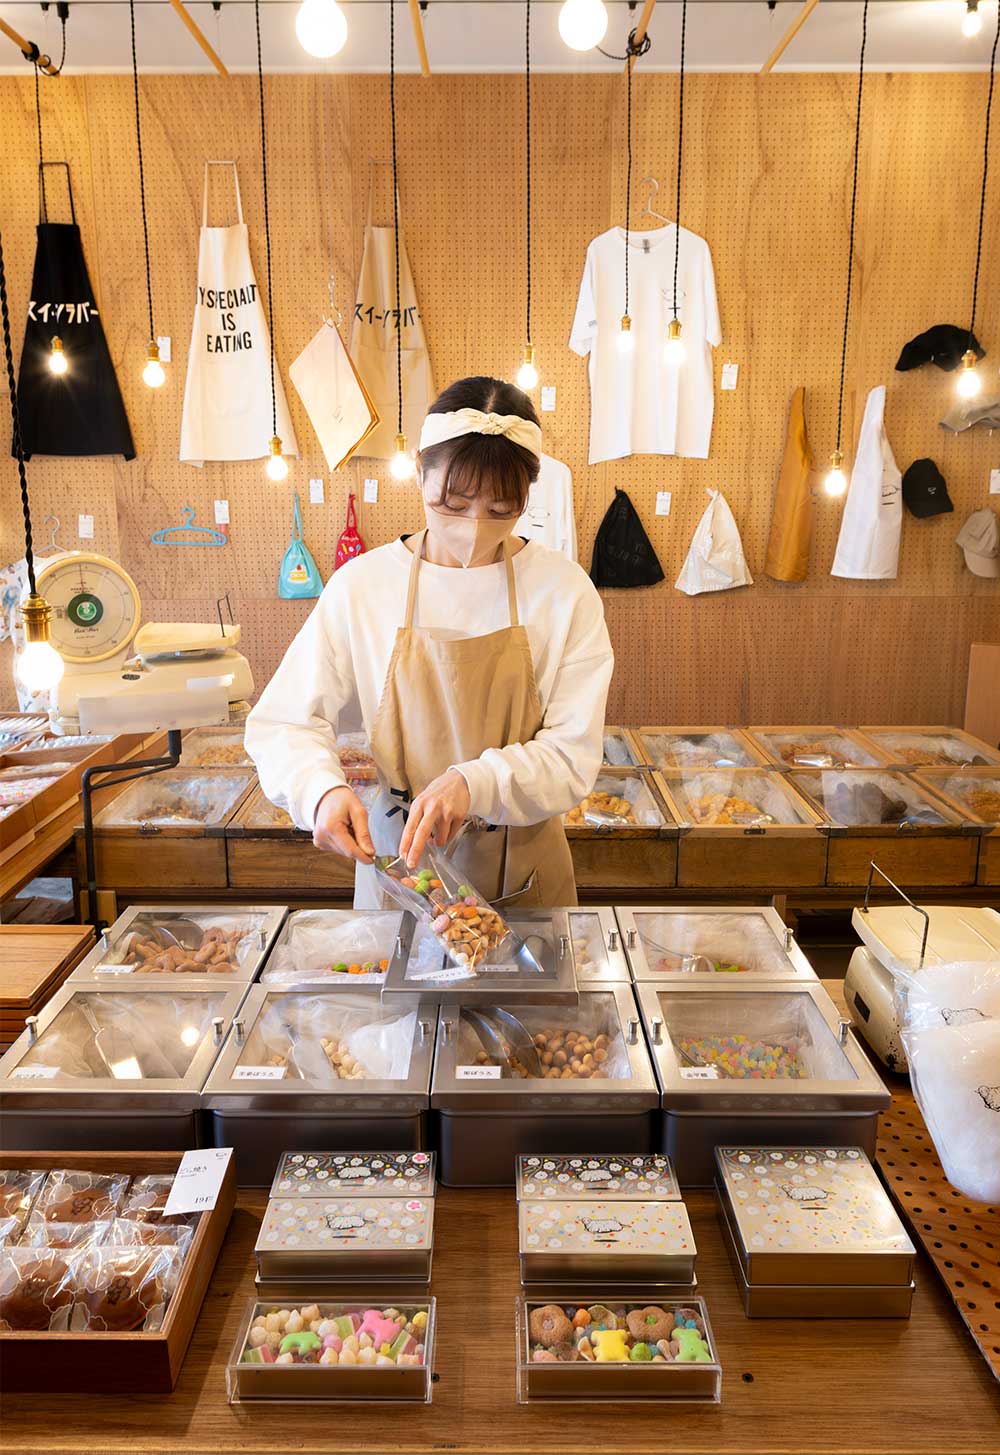 はかりや木箱は、厚木市の老舗駄菓子屋から受け継いだもの。和菓子は自社の職人が製造し、量り売りの駄菓子は各地の老舗菓子店から仕入れている。